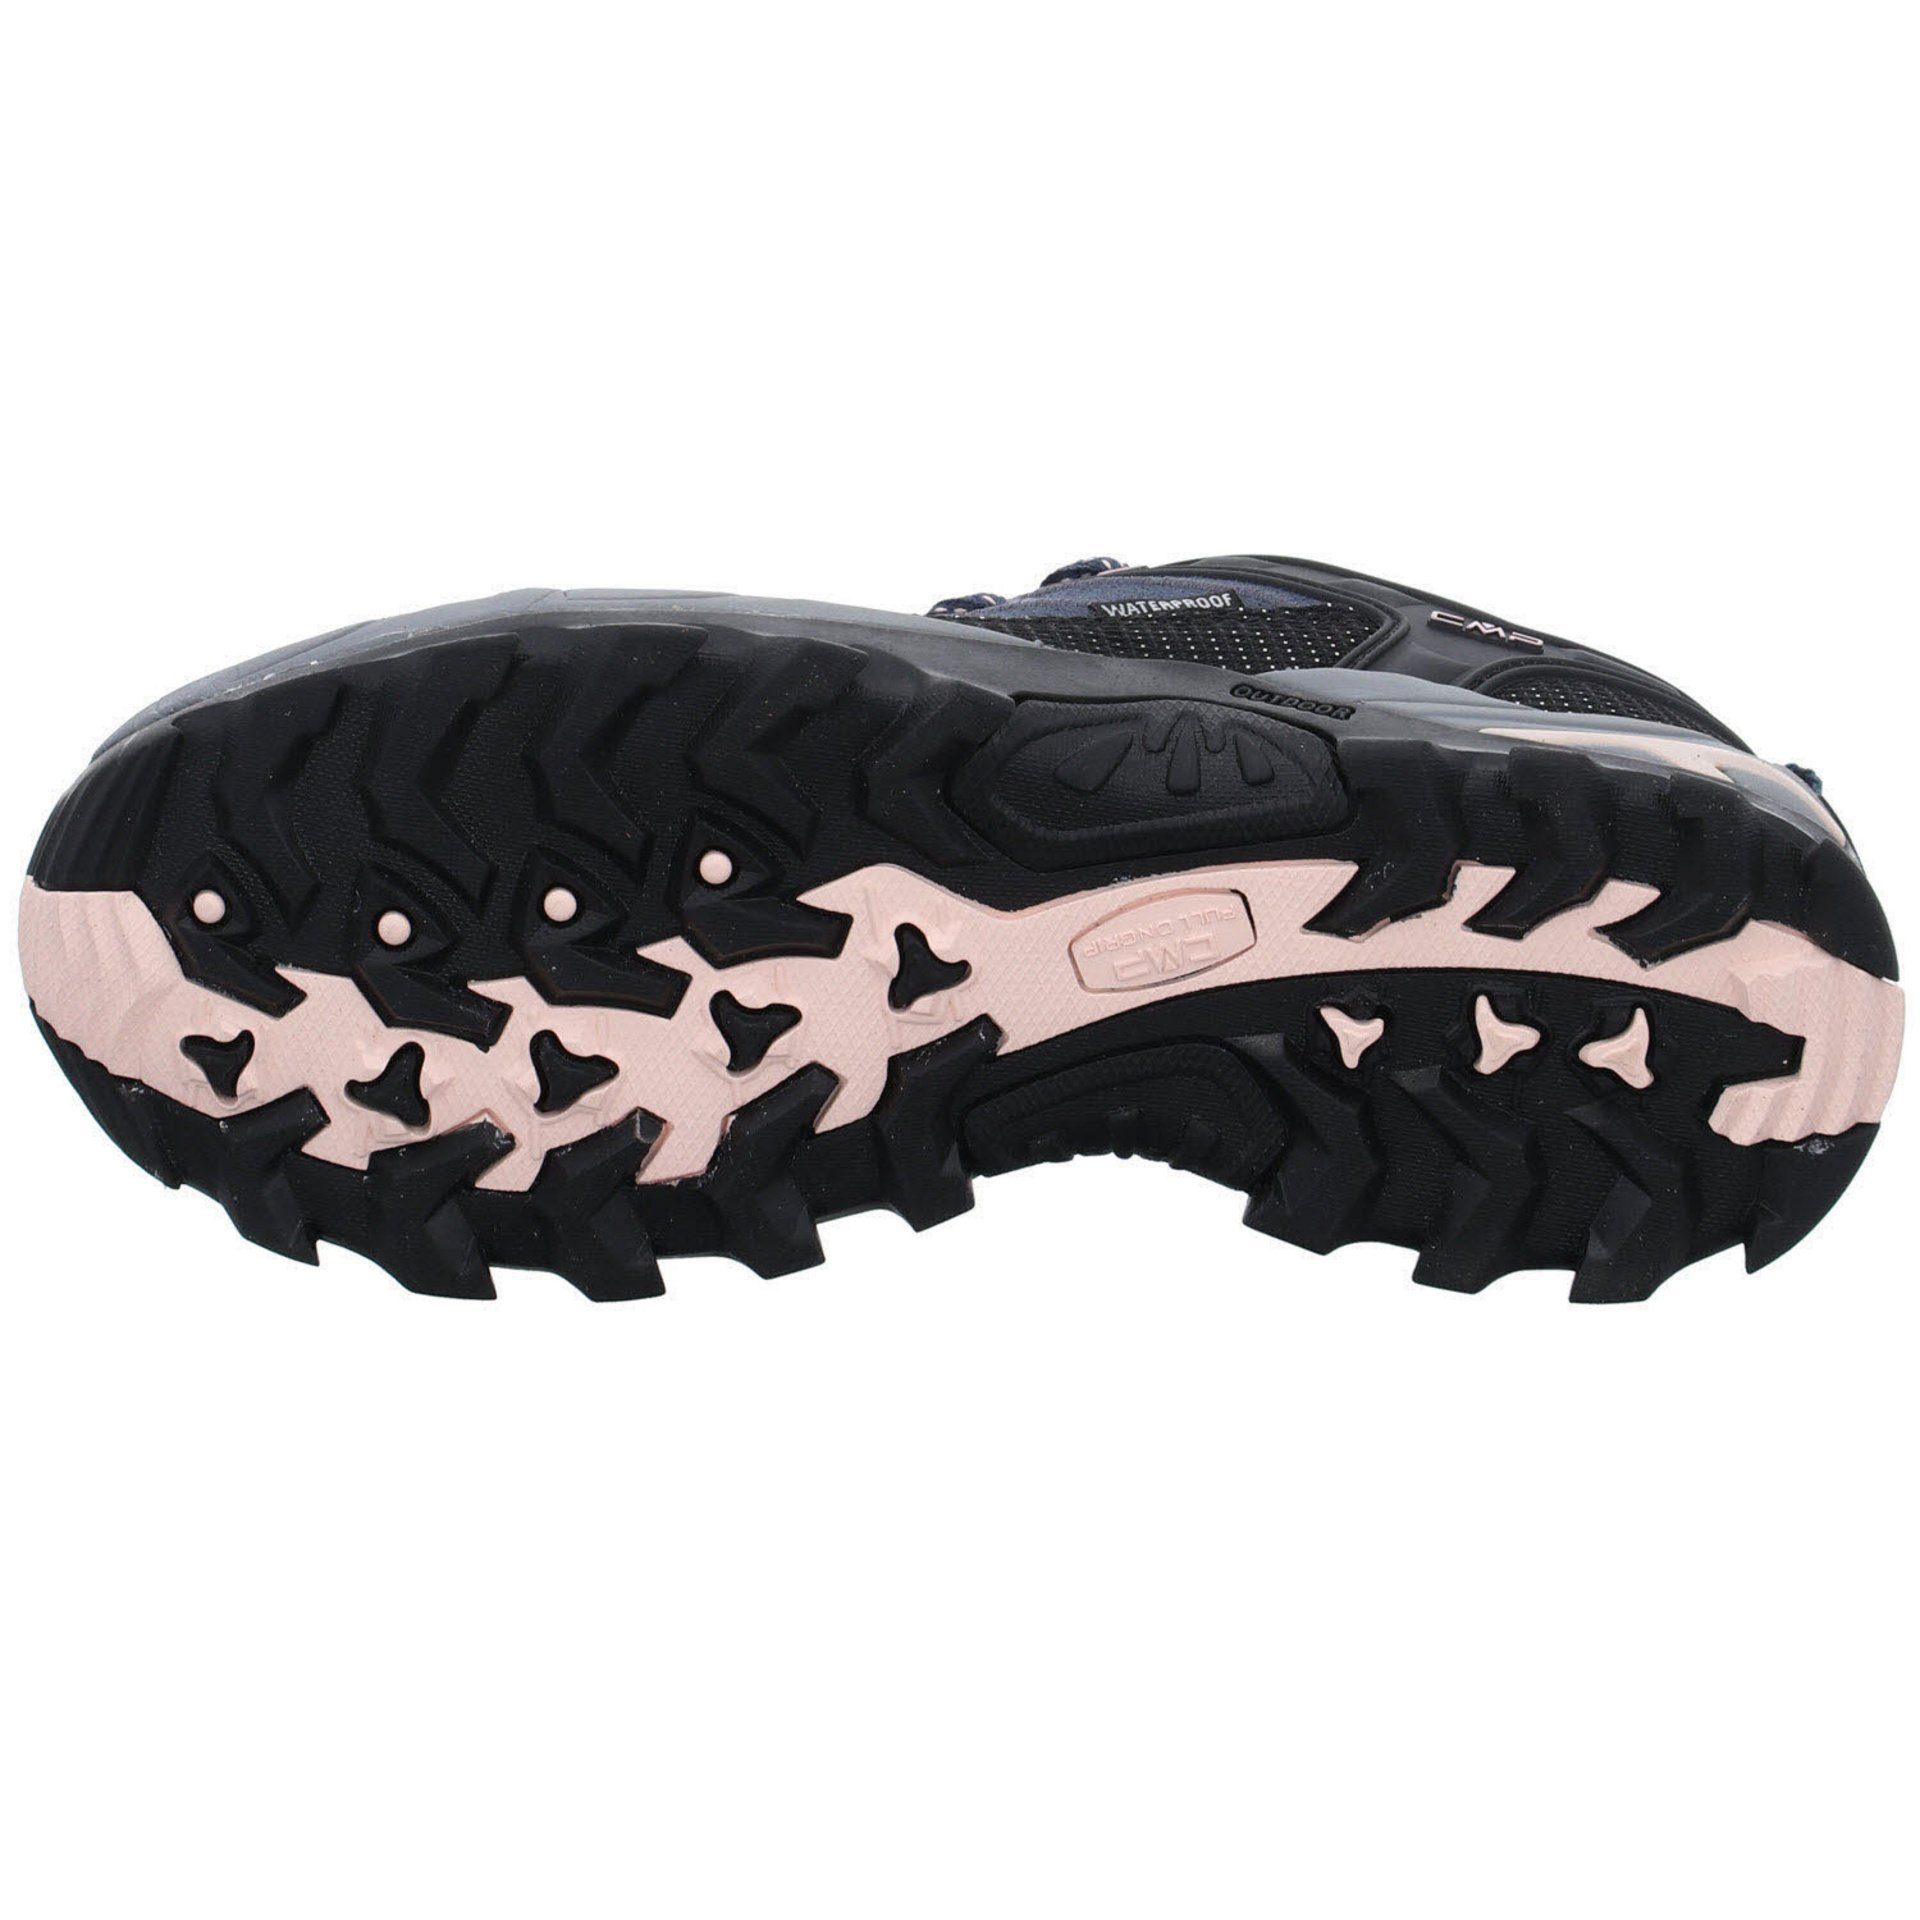 CMP Damen Schuhe Low Outdoorschuh Outdoorschuh 53UG ASPHALT-ANTRACITE-ROSE Outdoor Riegel Leder-/Textilkombination